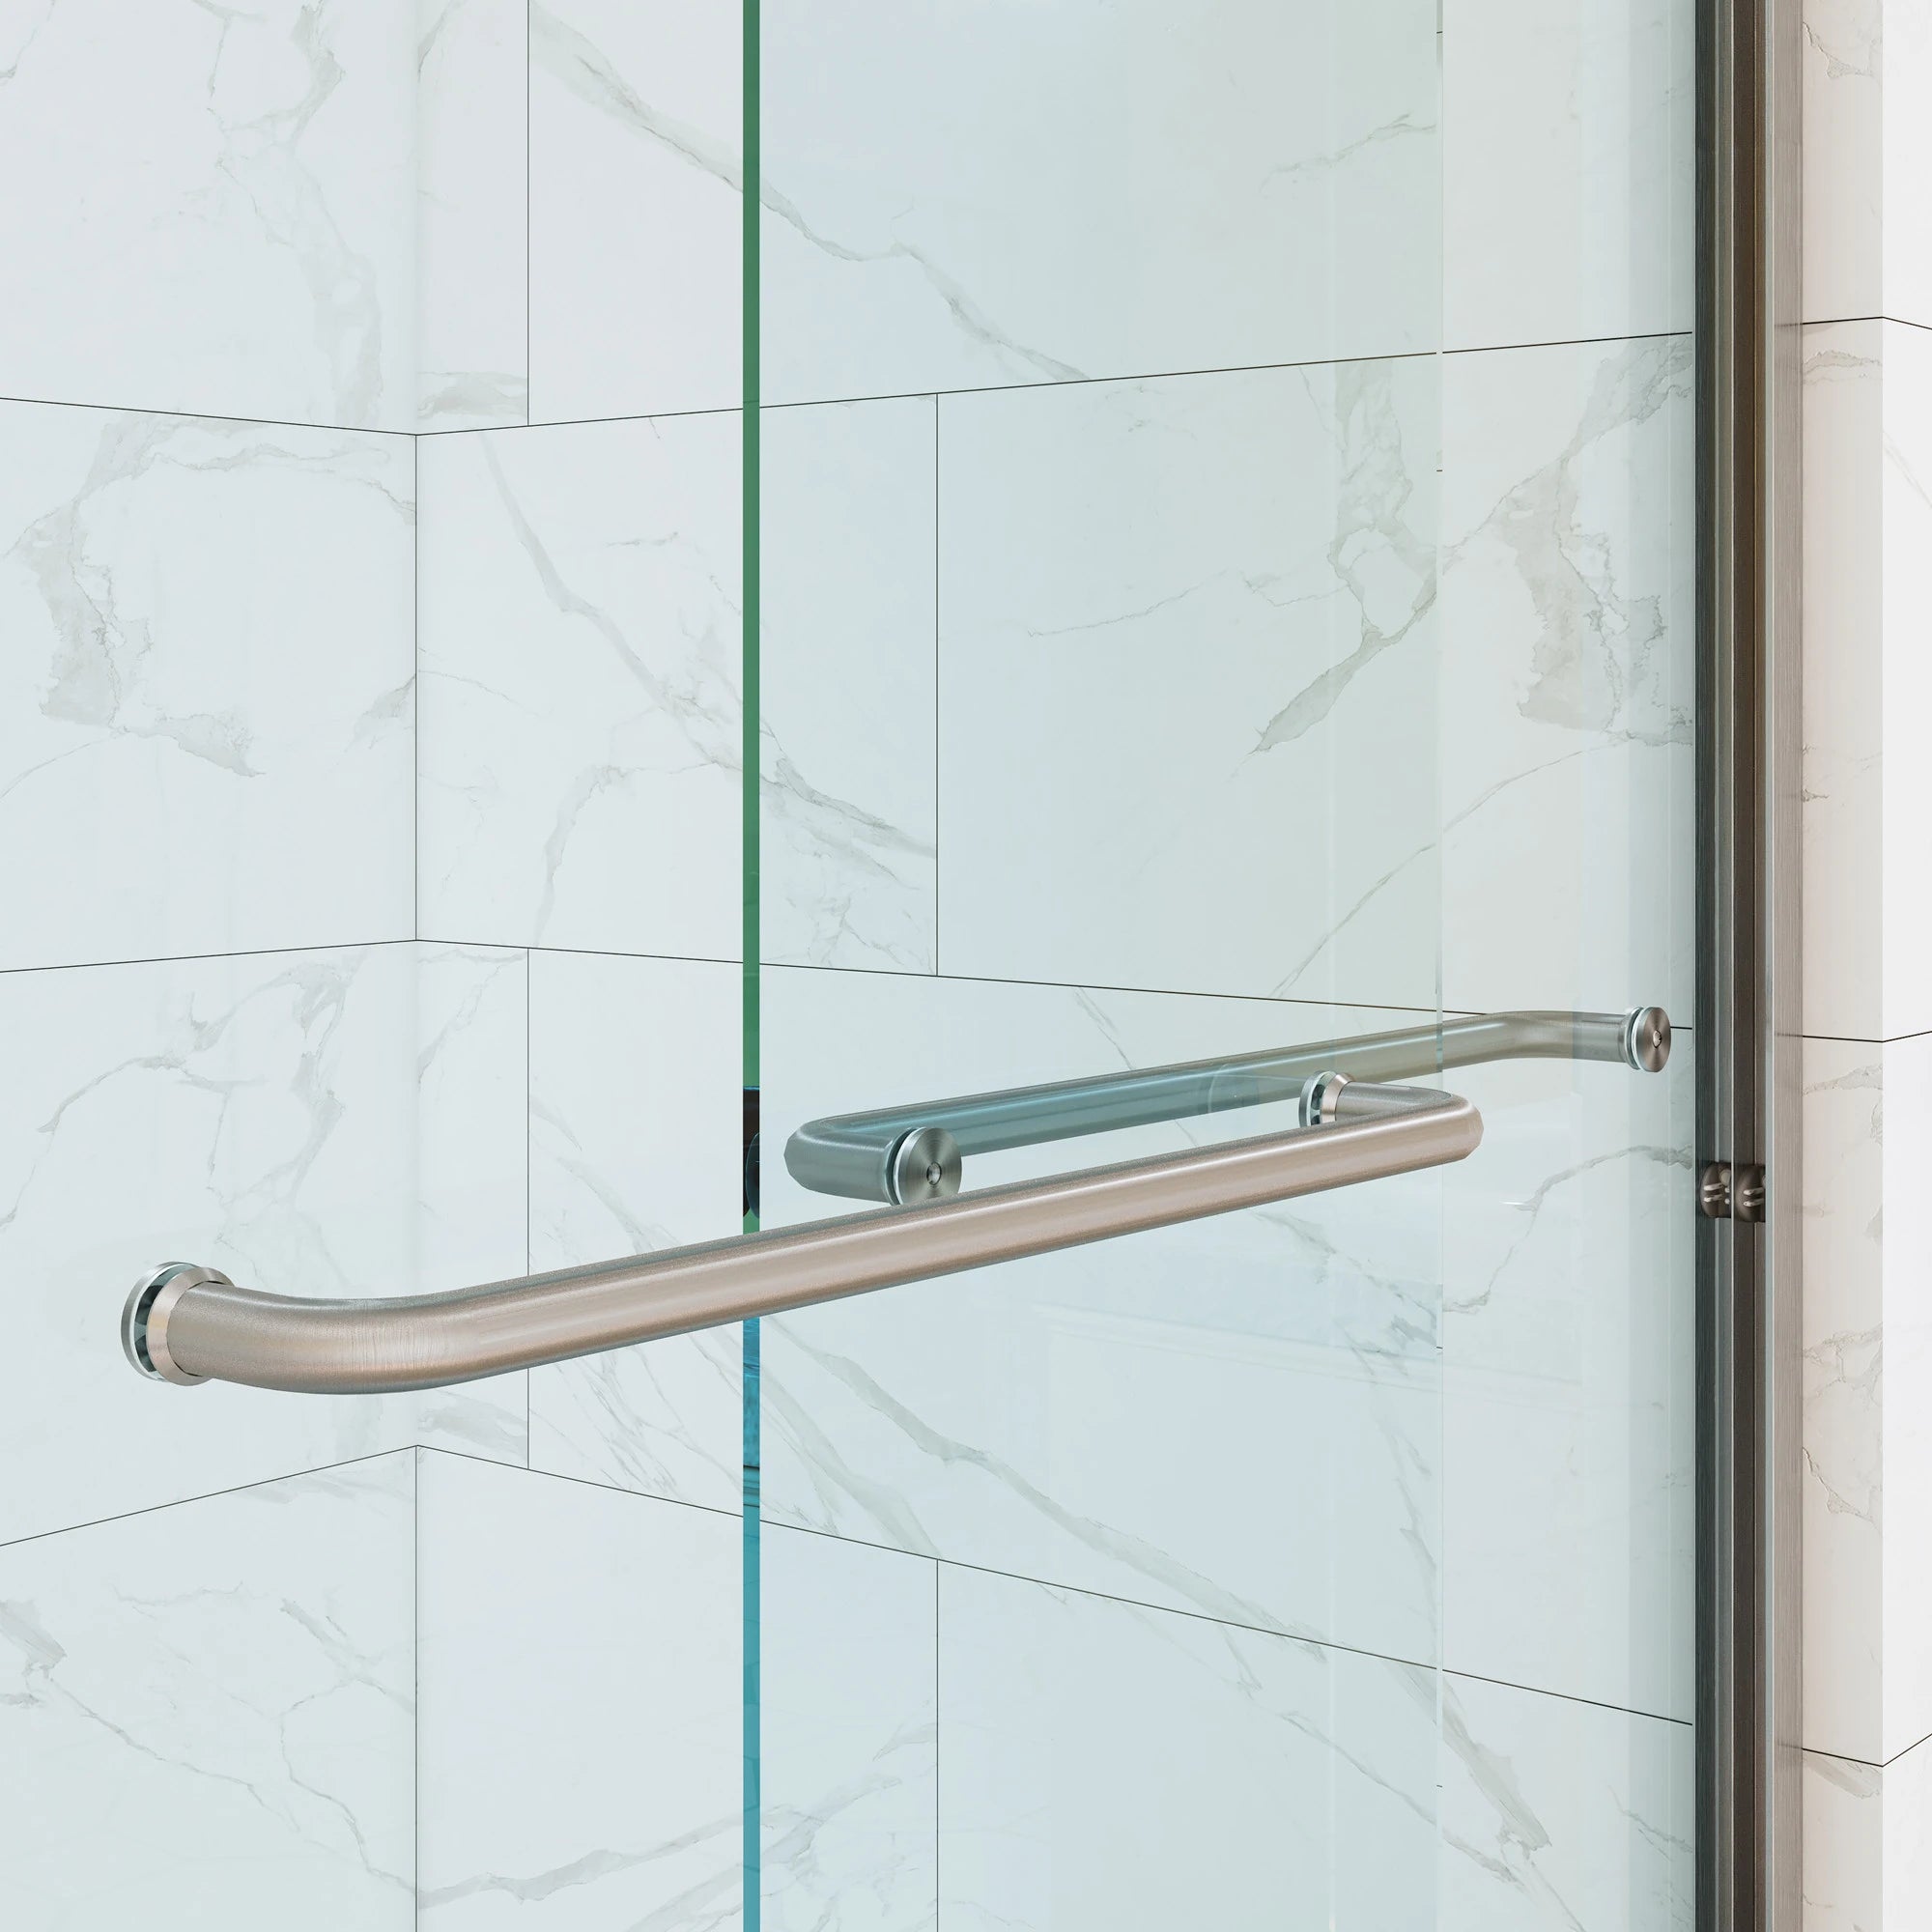 HOROW Bathroom Sliding Glass Door 60 Inch Brushed Nickel Frameless Shower Door Model BE6076-BN